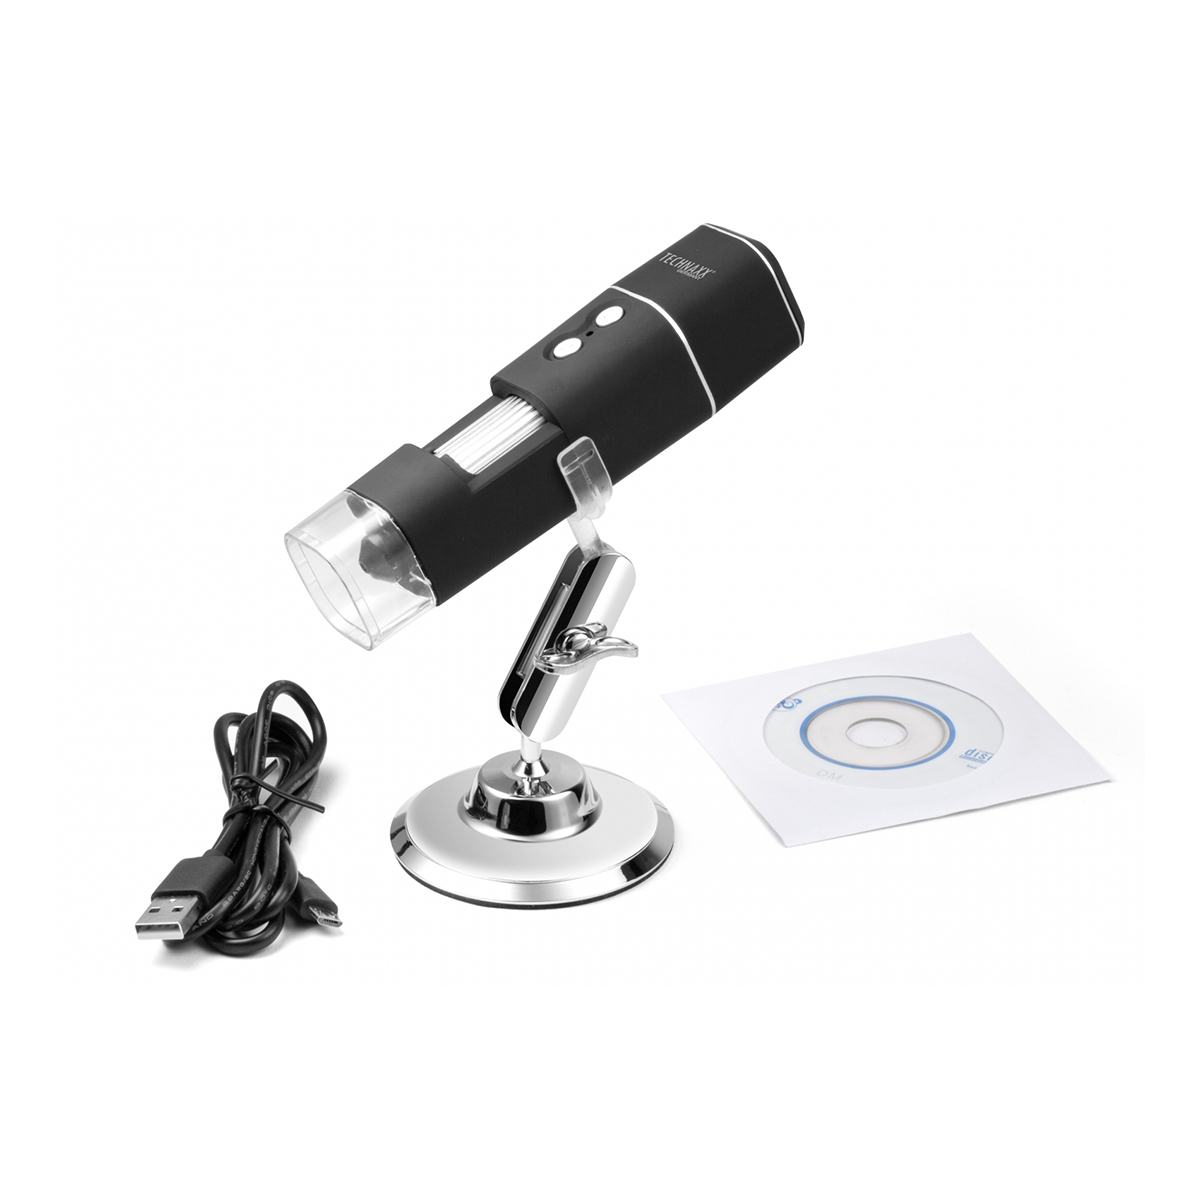 Technaxx TX-158 FullHD Trådlöst Mikroskop